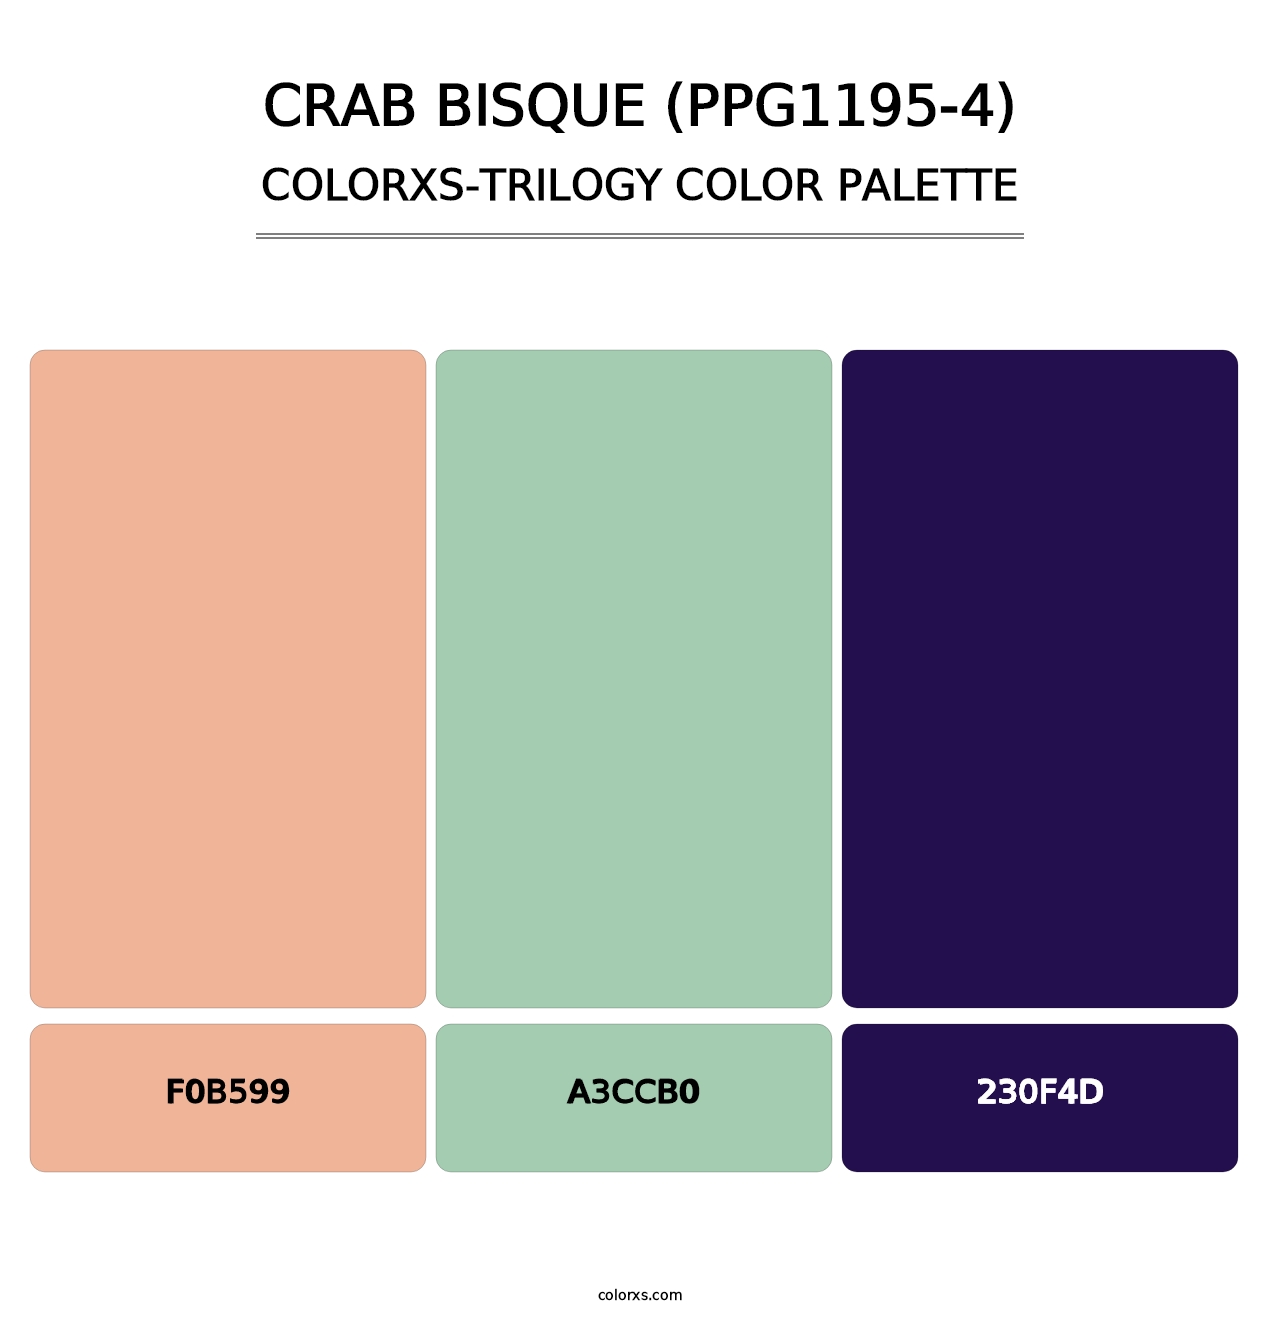 Crab Bisque (PPG1195-4) - Colorxs Trilogy Palette